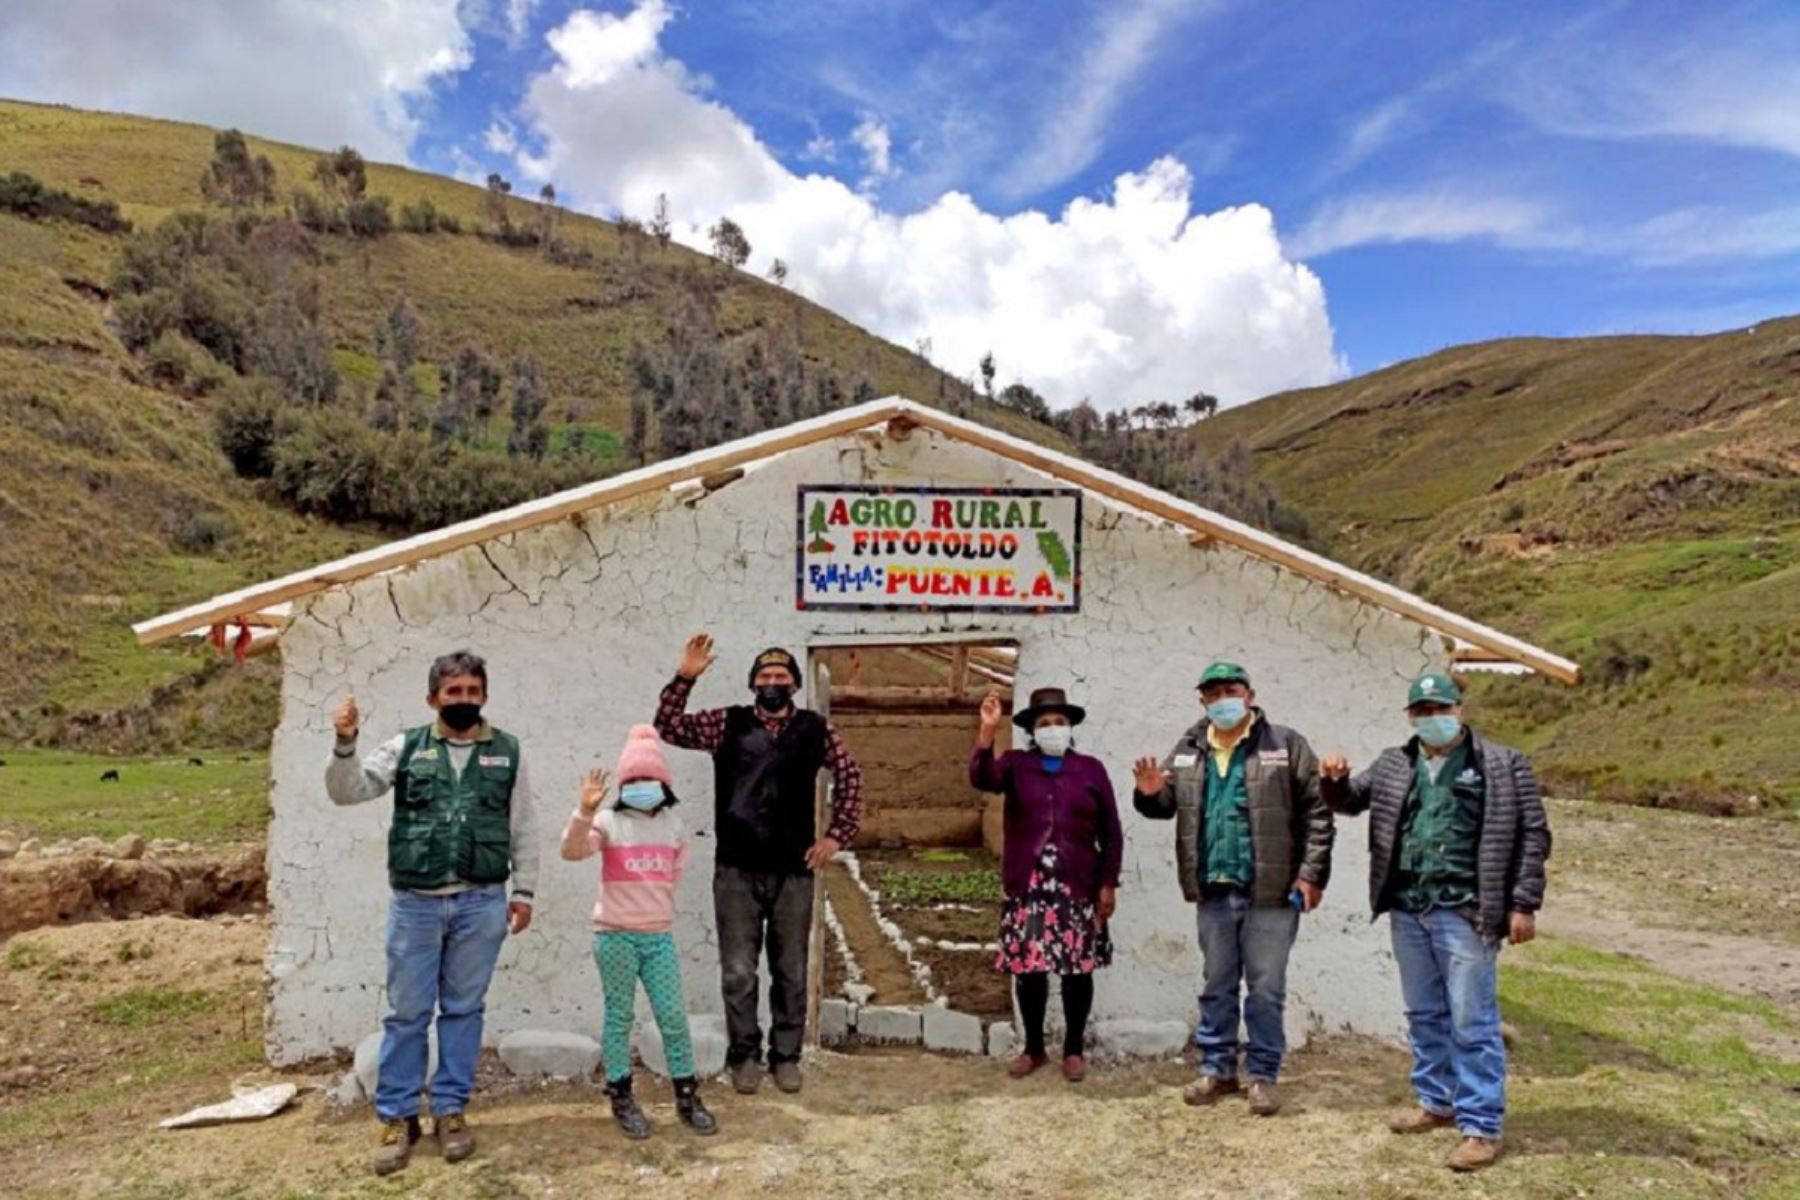 Agro Rural entrega fitotoldos a los agricultores familiares en la región Huánuco. Foto: Cortesía.